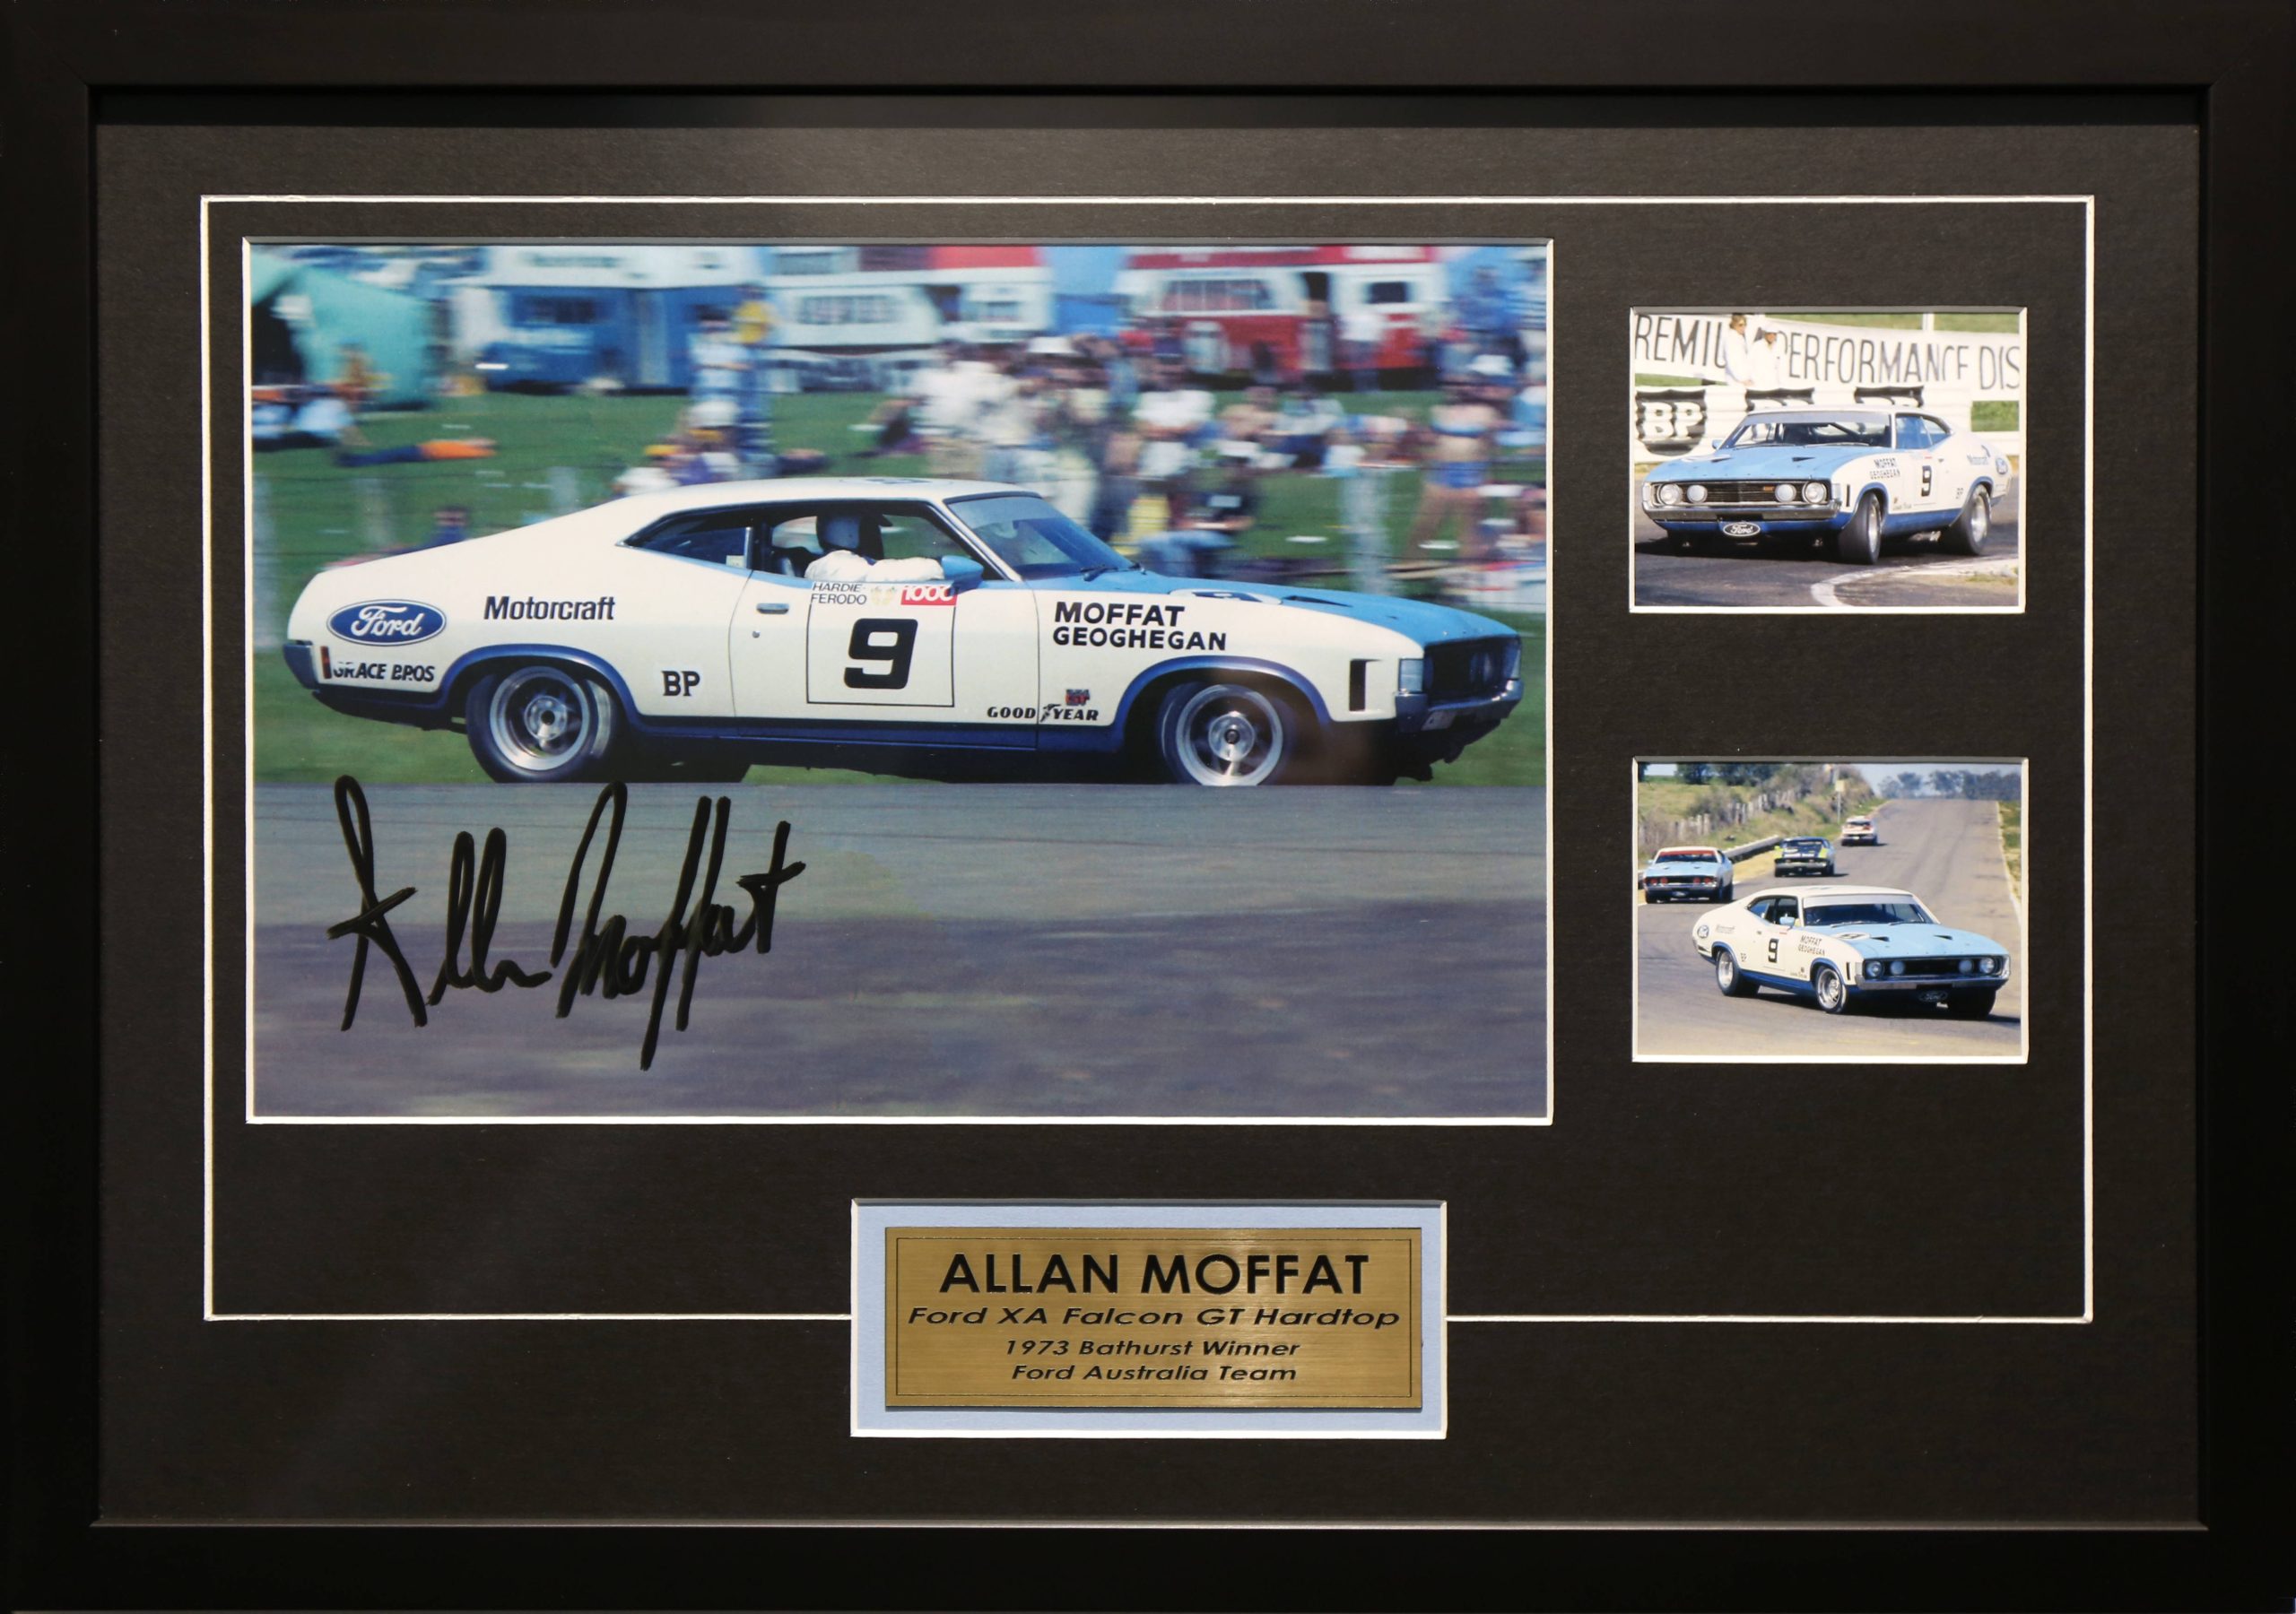 Allan Moffat Signed & Framed Motor Racing Memorabilia. 1973 Ford XA Falcon GT Hardtop Bathurst Winner.